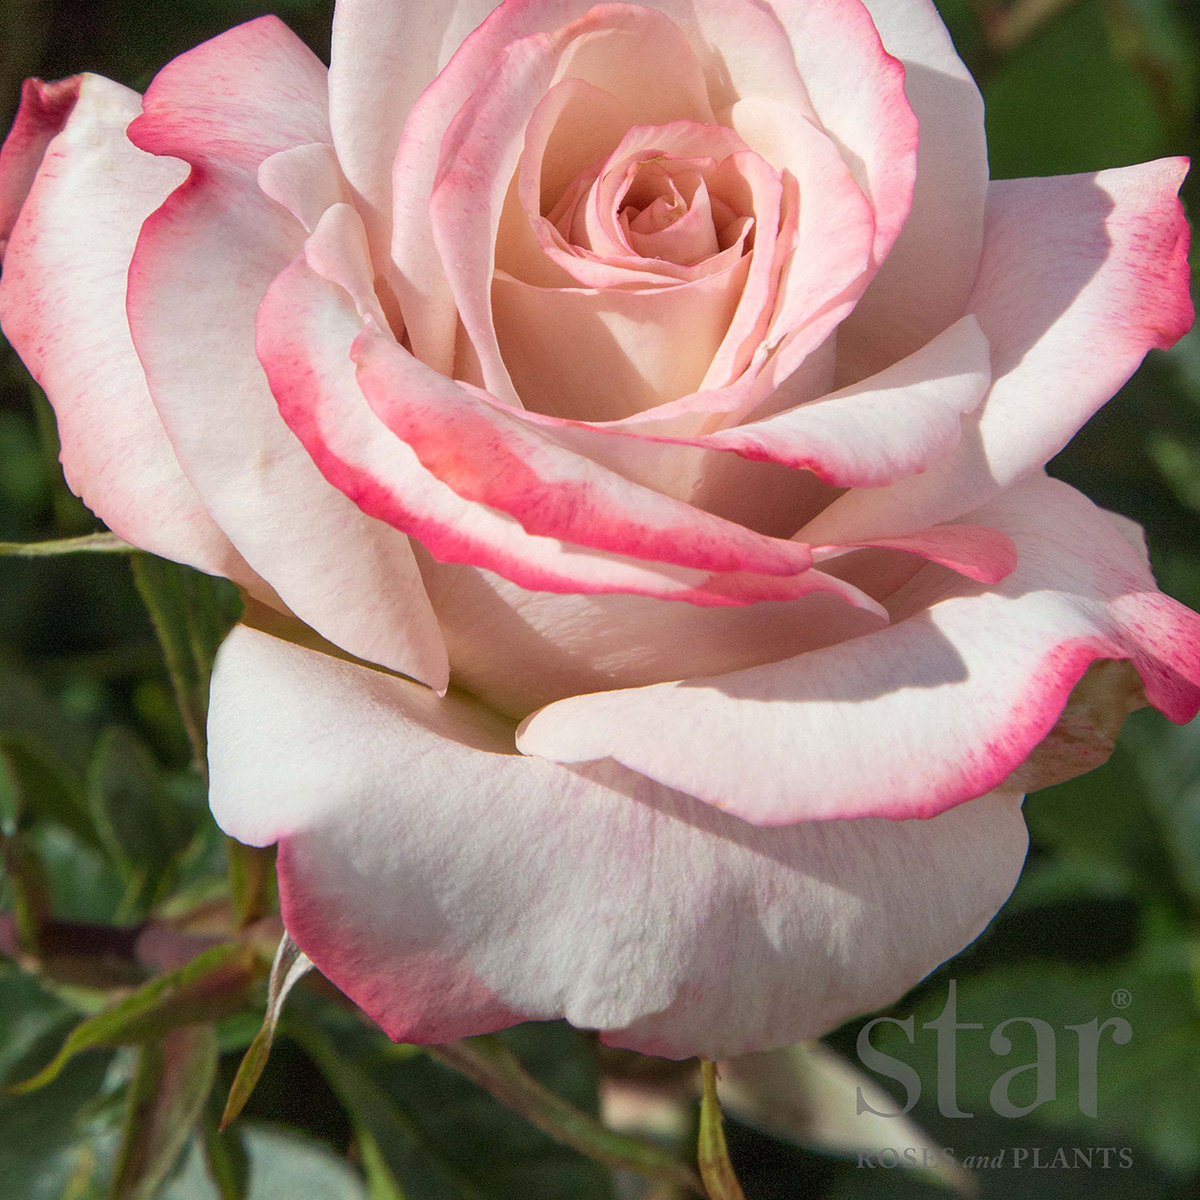 Star Roses Pinkerbelle.jpg